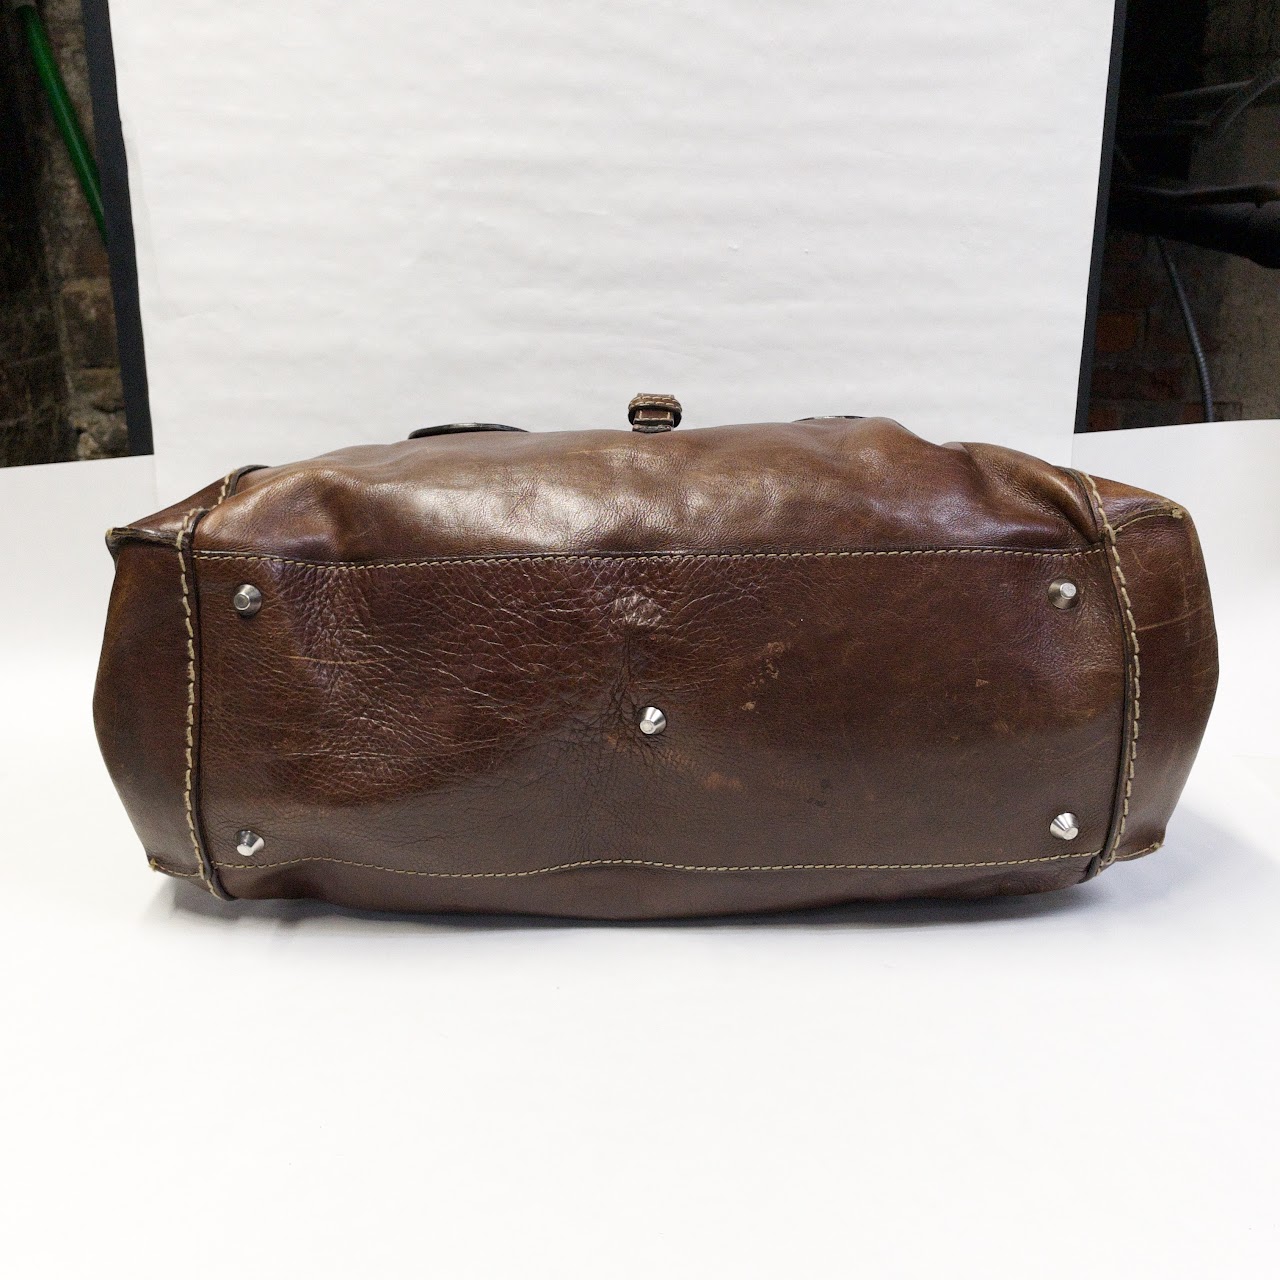 Chloé Leather Weekender Bag